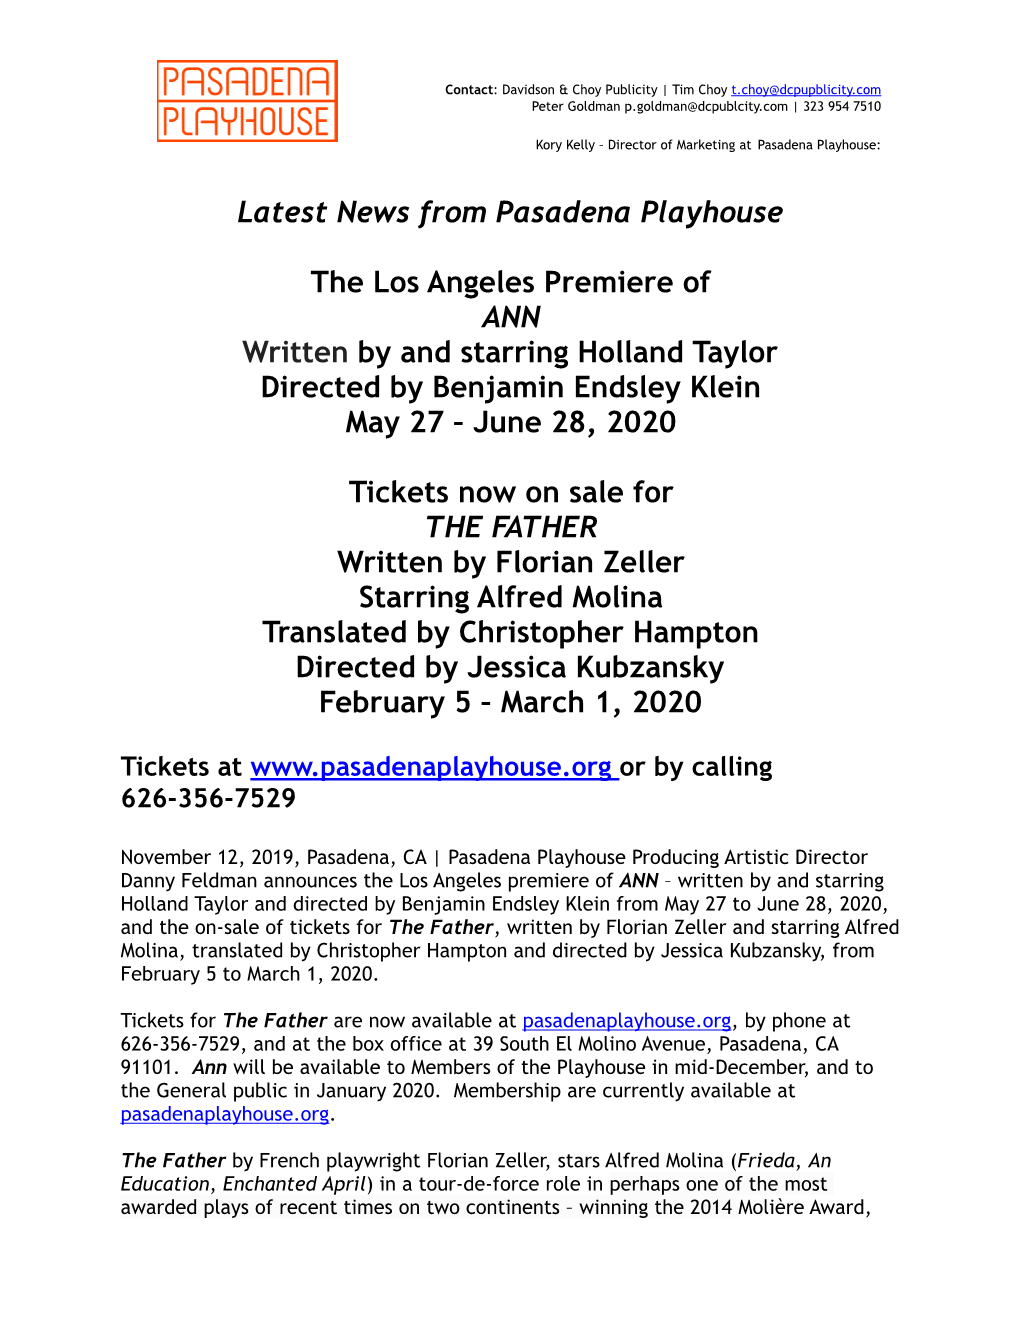 Latest News from Pasadena Playhouse